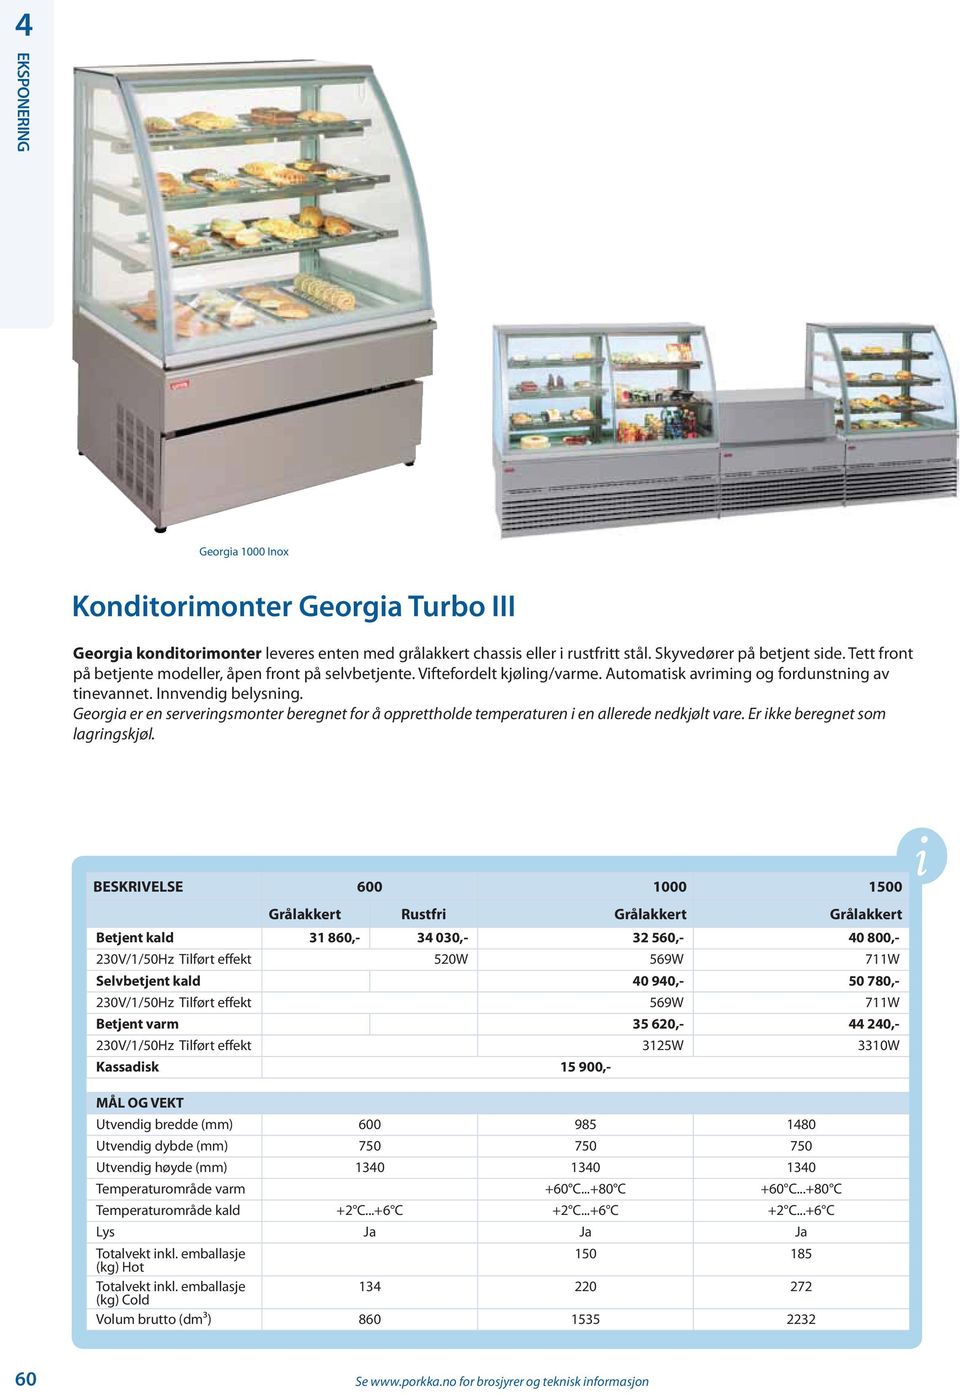 Georgia er en serveringsmonter beregnet for å opprettholde temperaturen i en allerede nedkjølt vare. Er ikke beregnet som lagringskjøl.